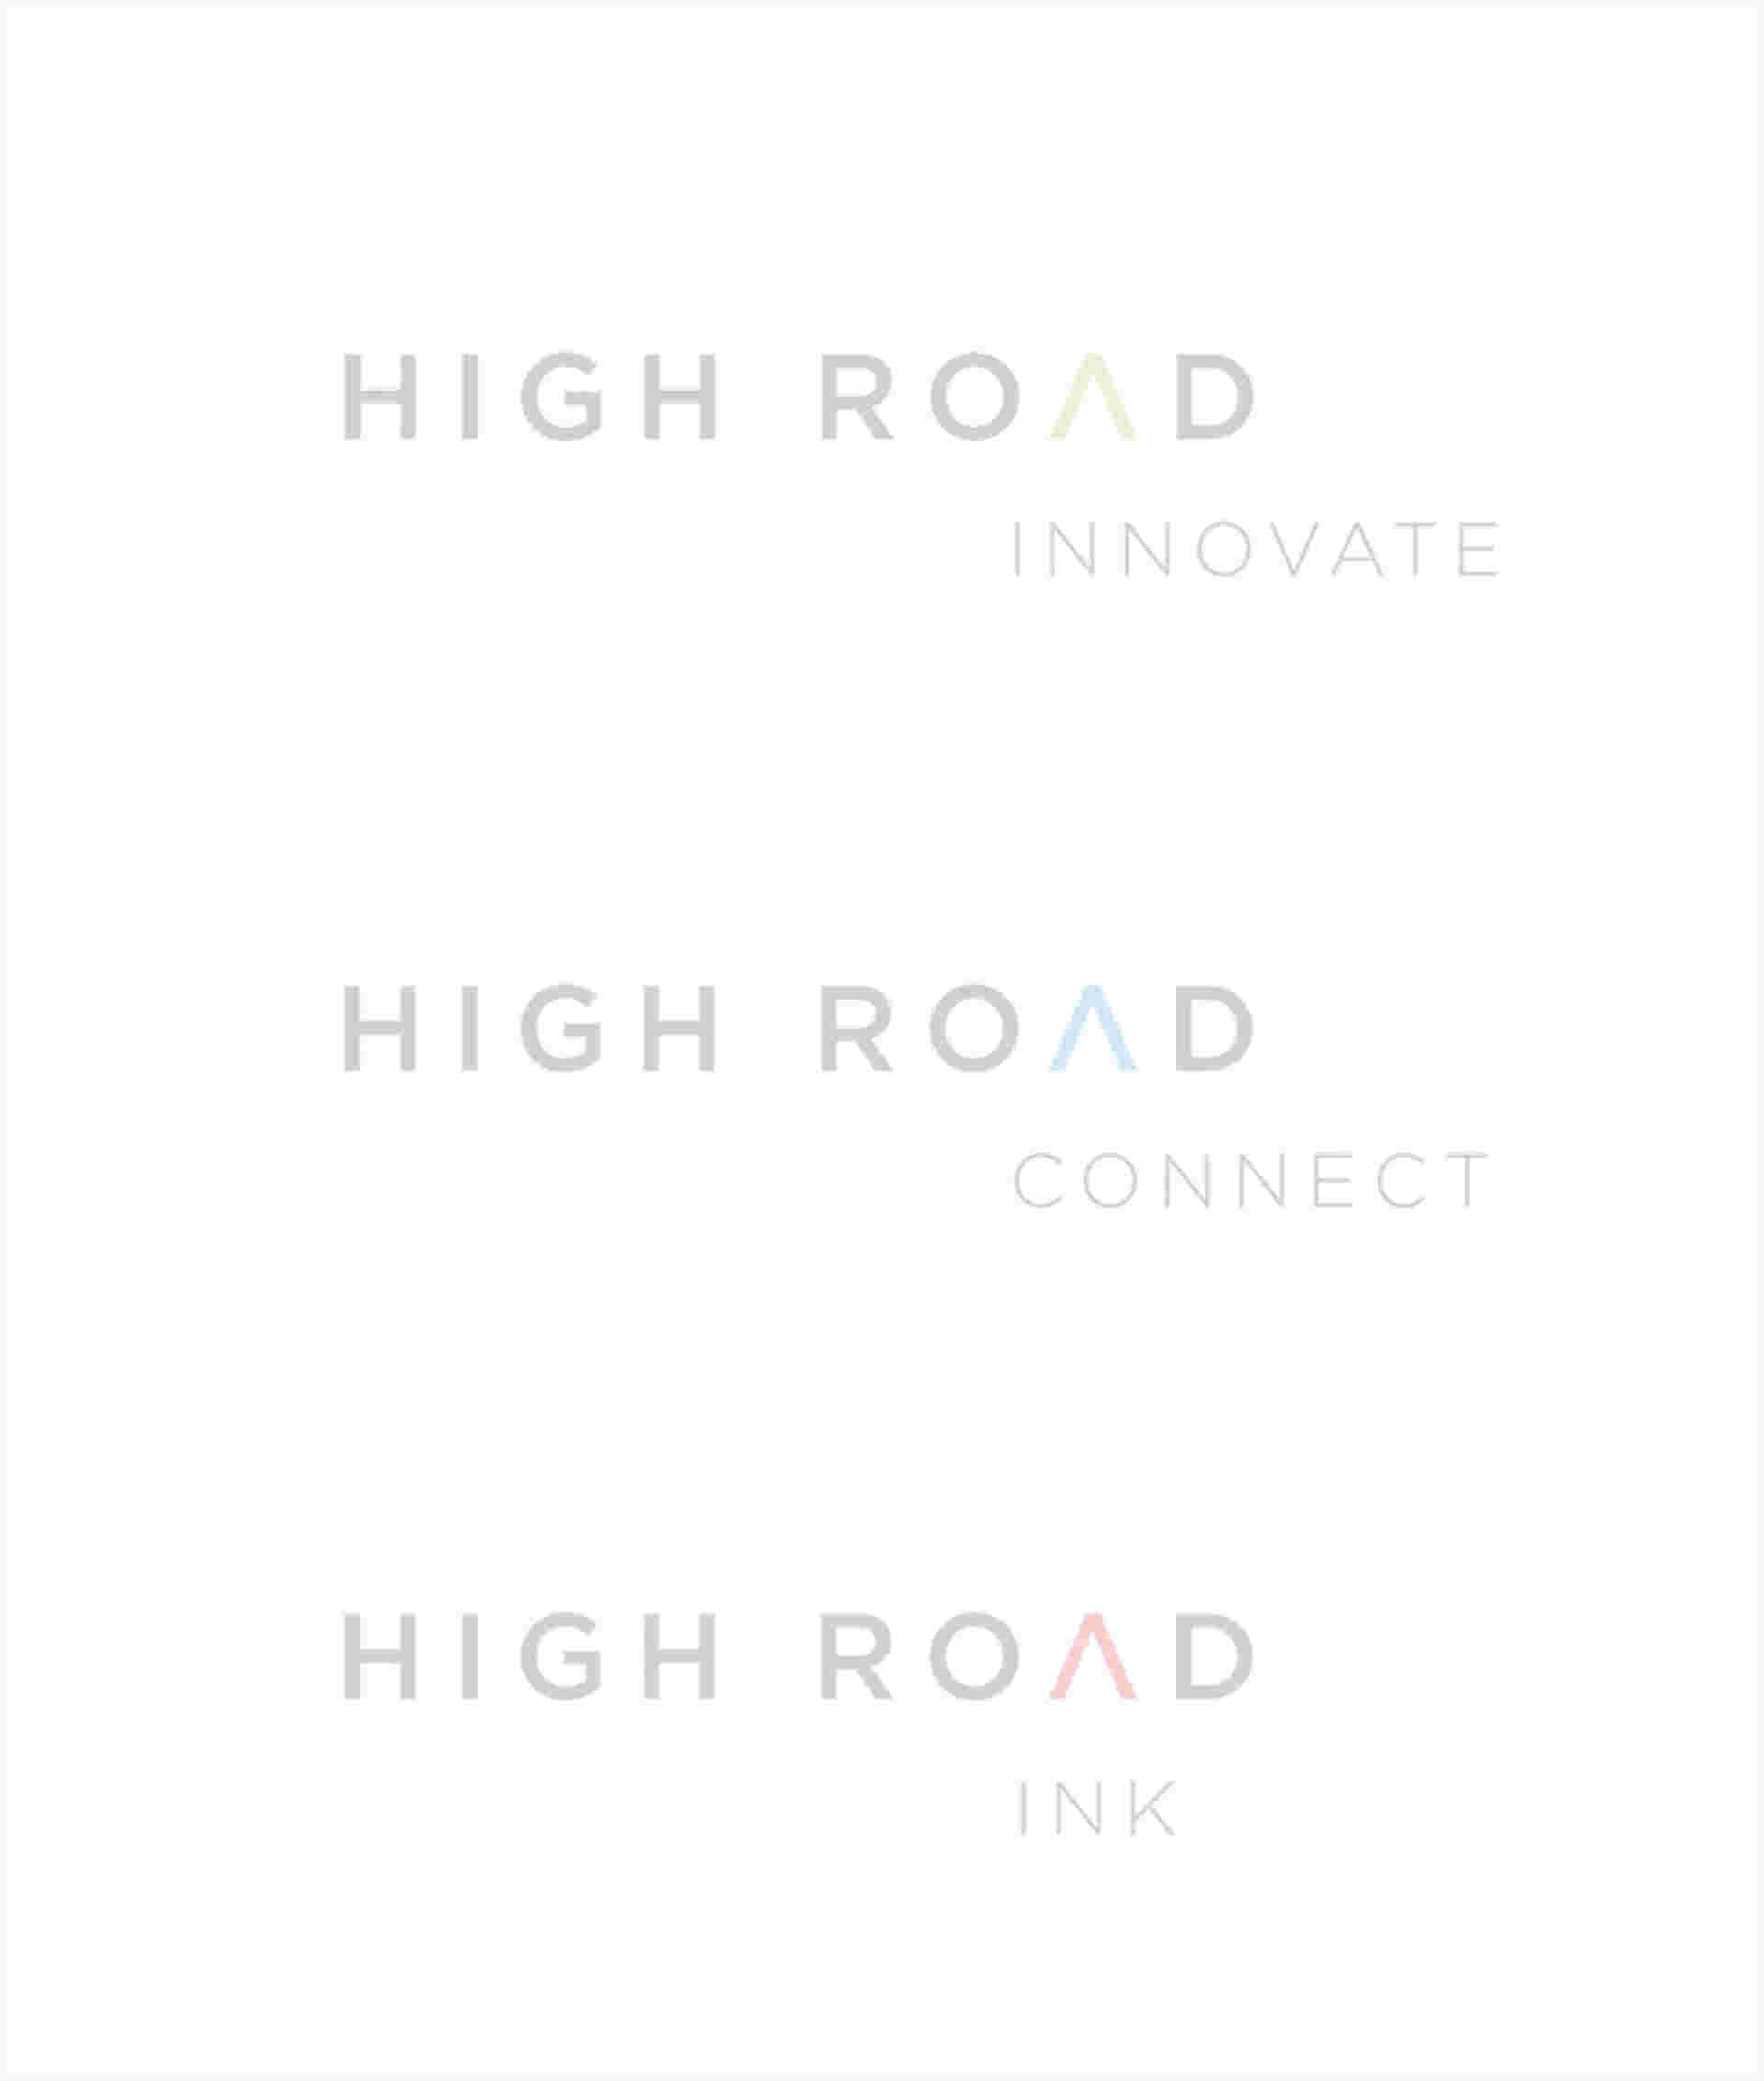 High Road Communications - HighRoad-6_2